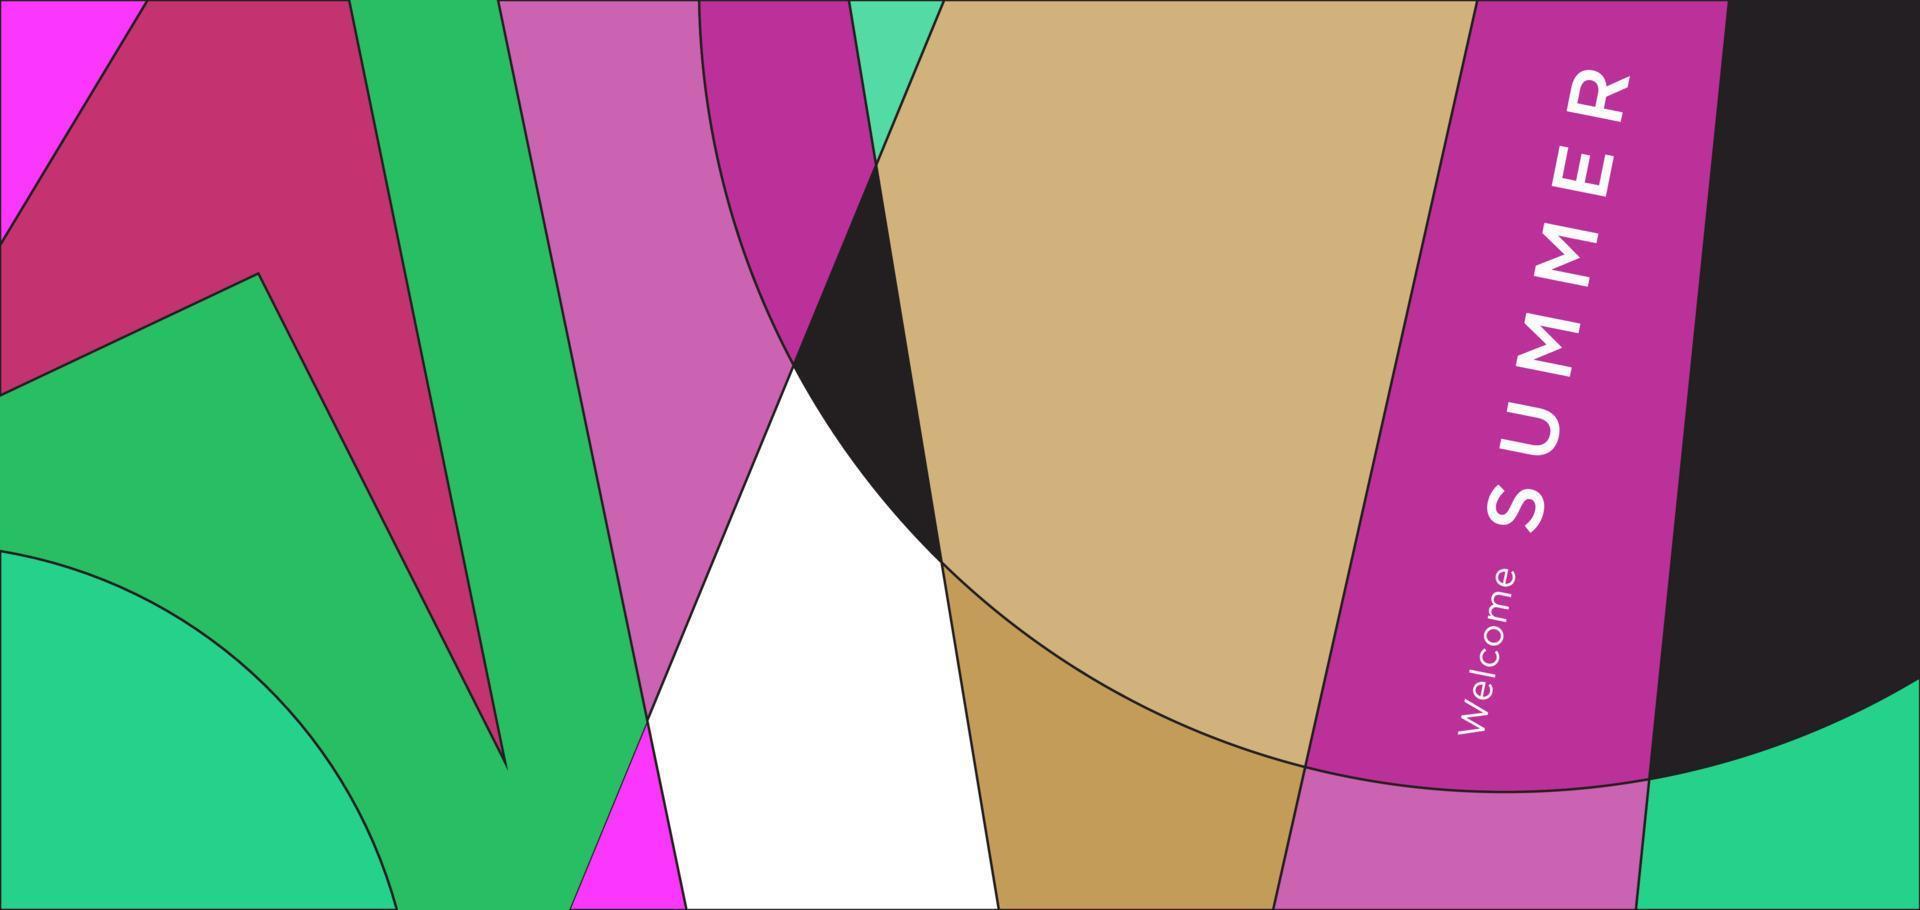 fundo geométrico abstrato colorido para banner de verão vetor